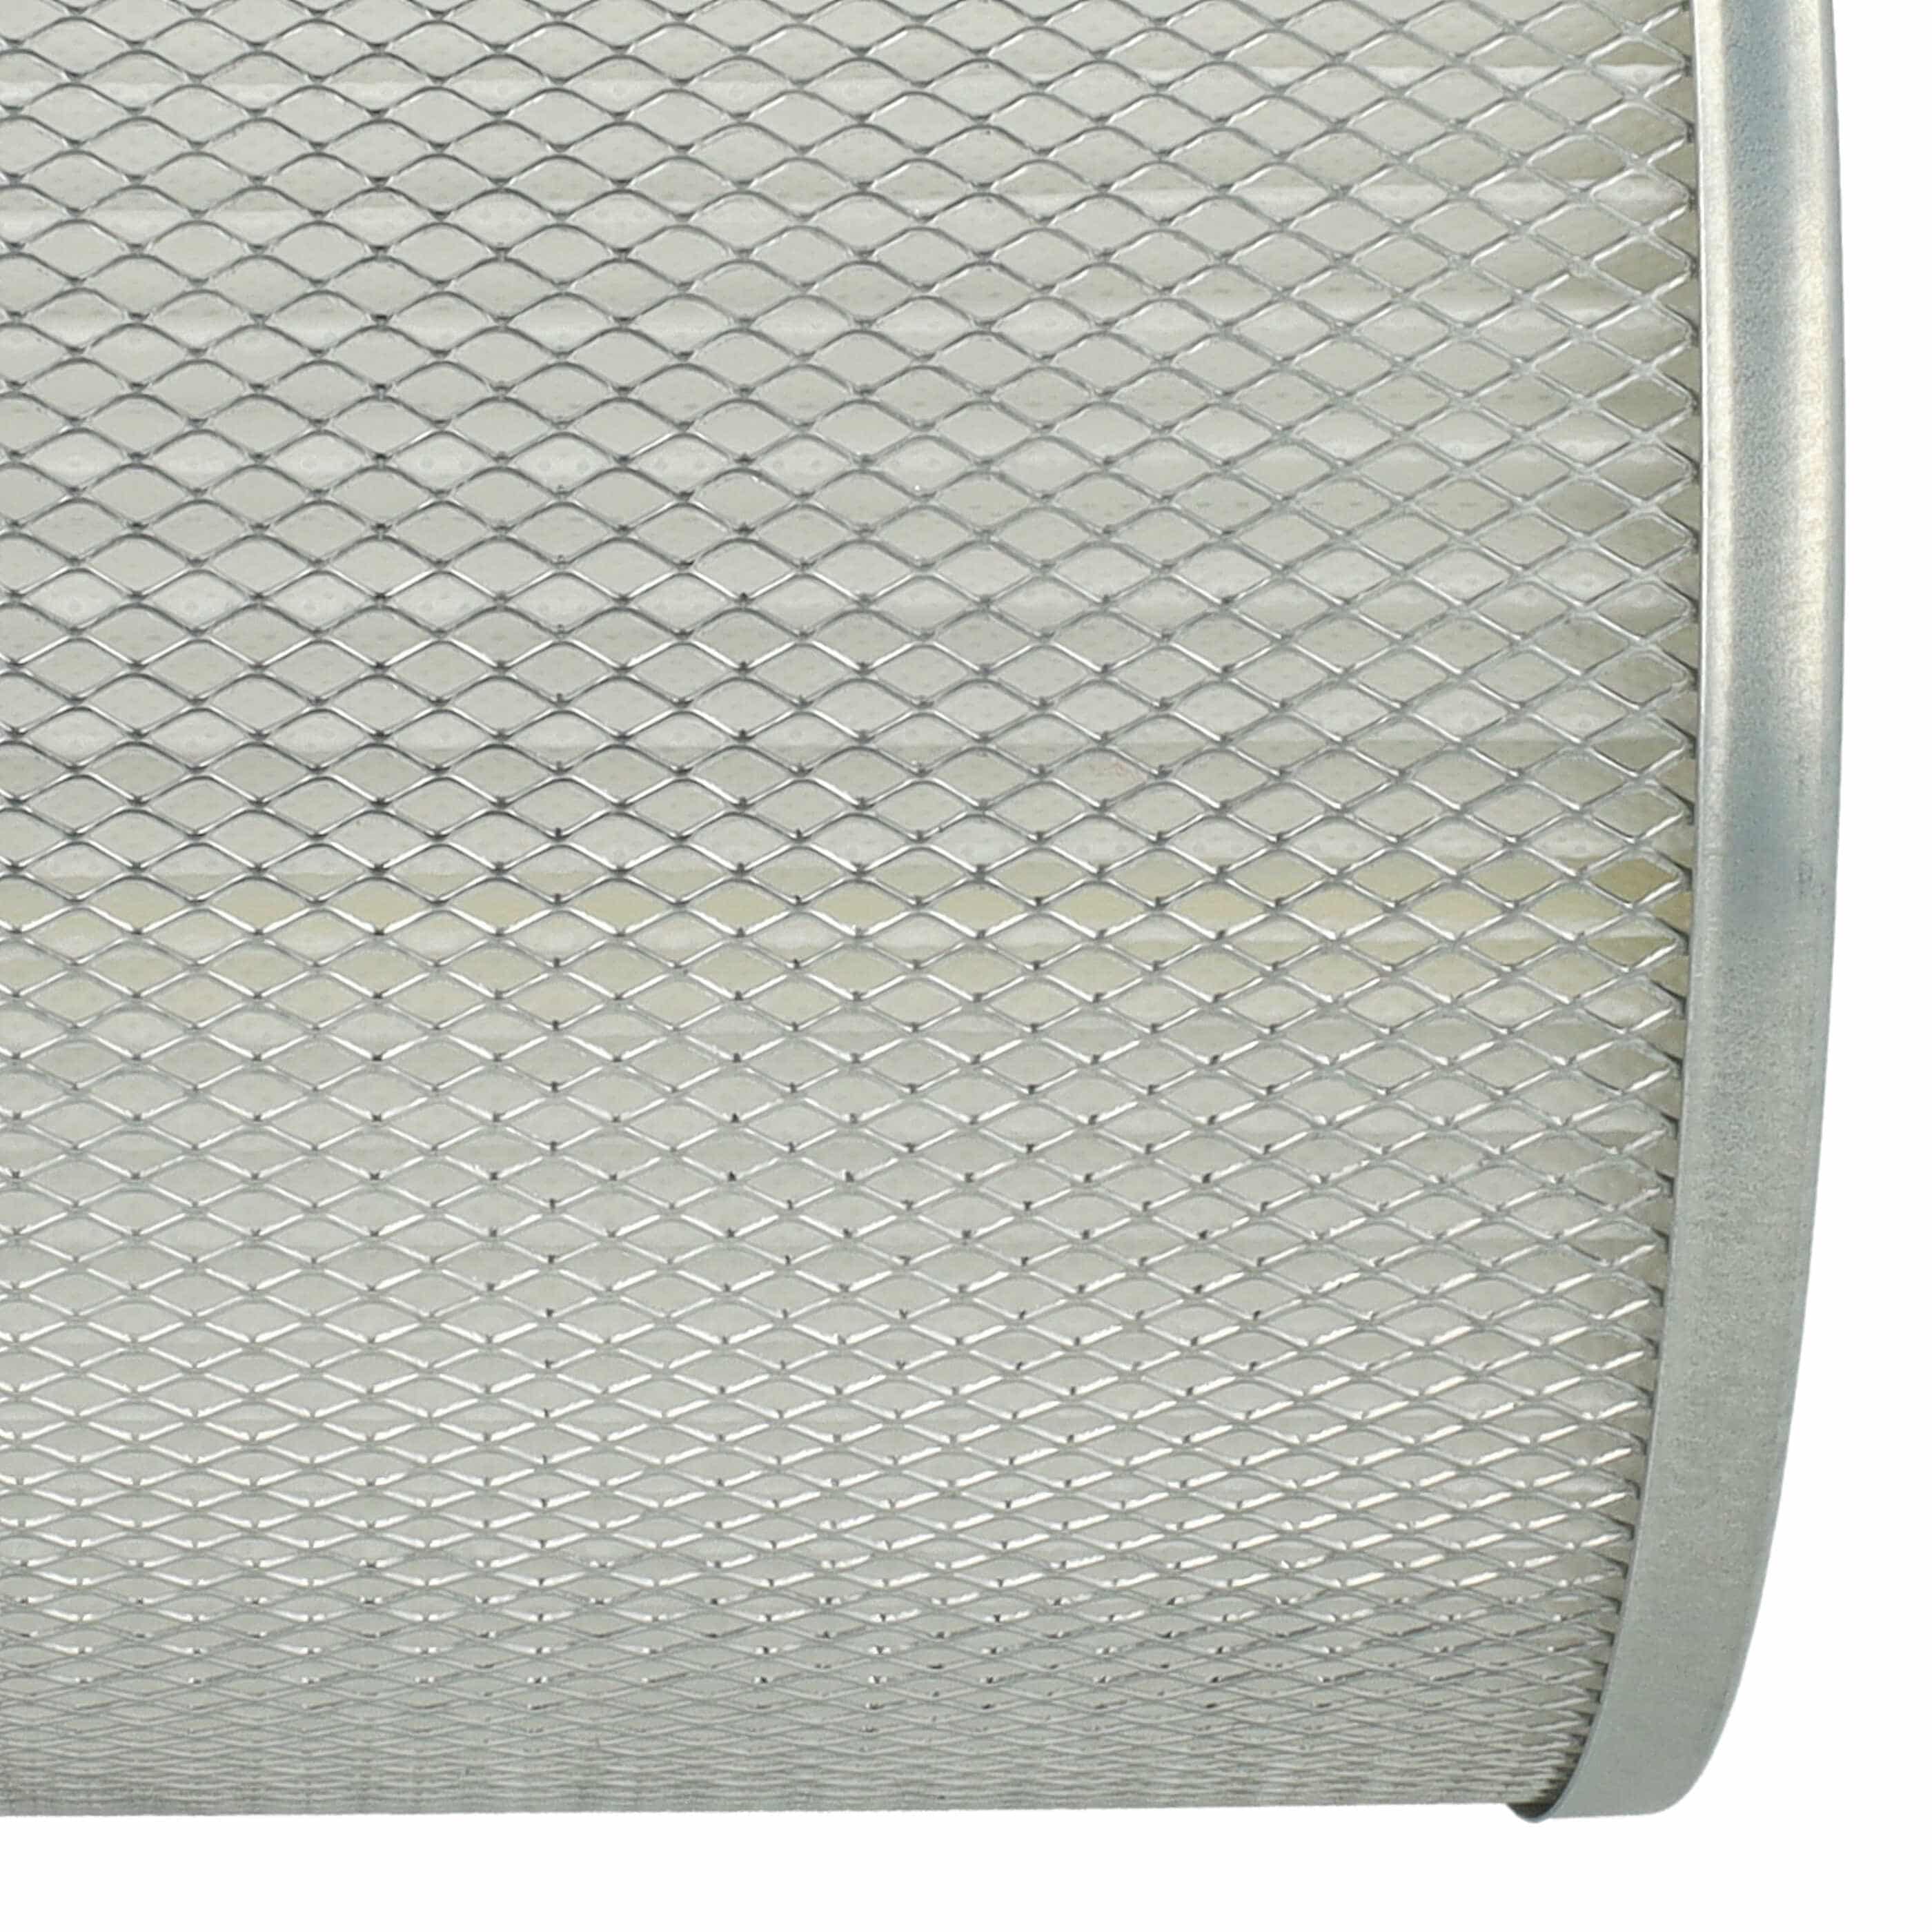 Filtre remplace ROWI 212010019 pour aspirateur de cheminée - filtre plissé